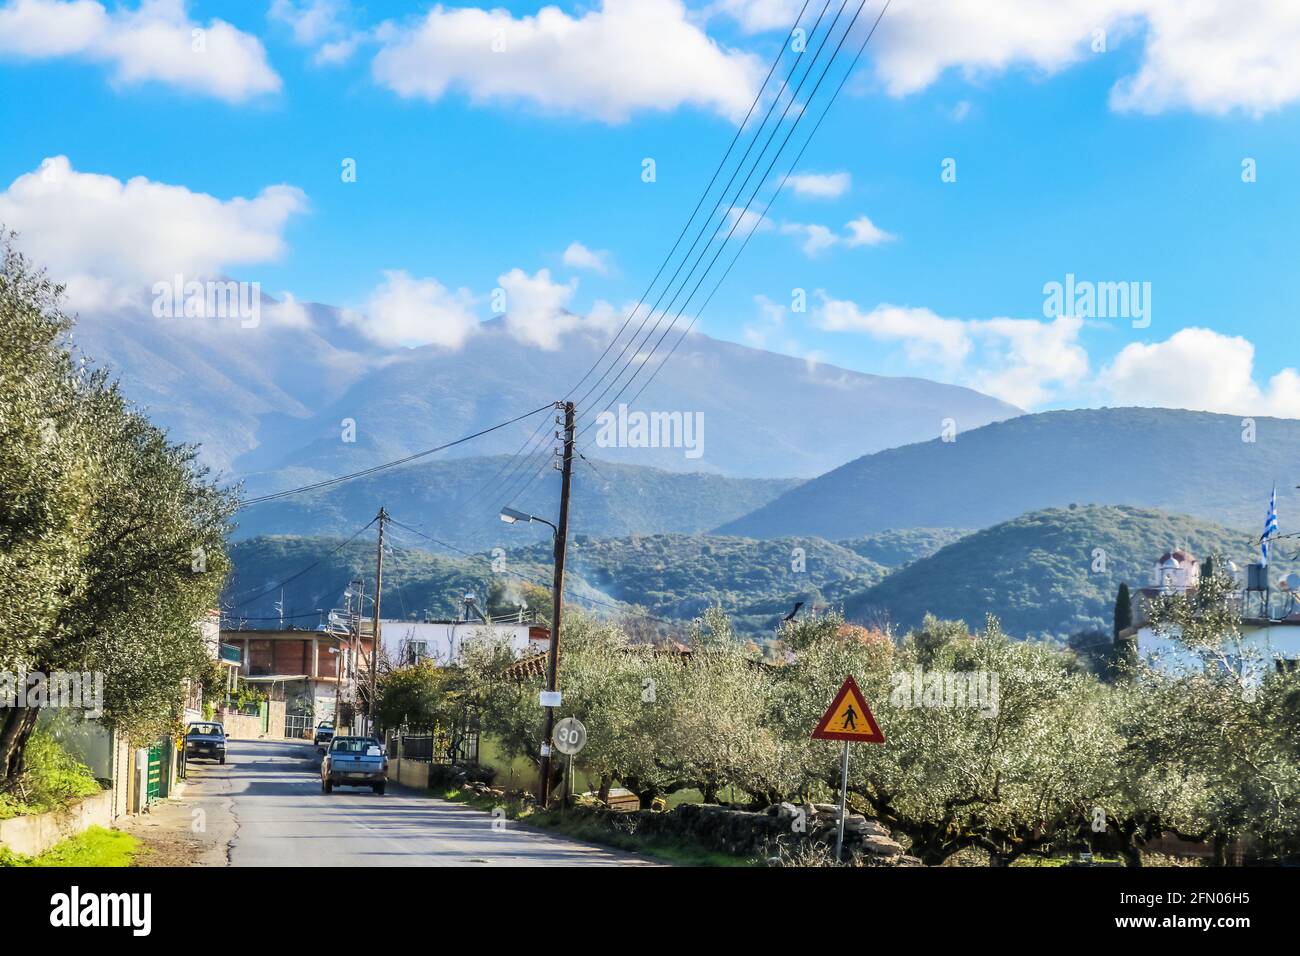 Guida attraverso un piccolo villaggio di montagna nella catena montuosa di Taygetus in La penisola del Peloponneso, nel sud della Grecia, con alberi di olivo e. abete potato Foto Stock